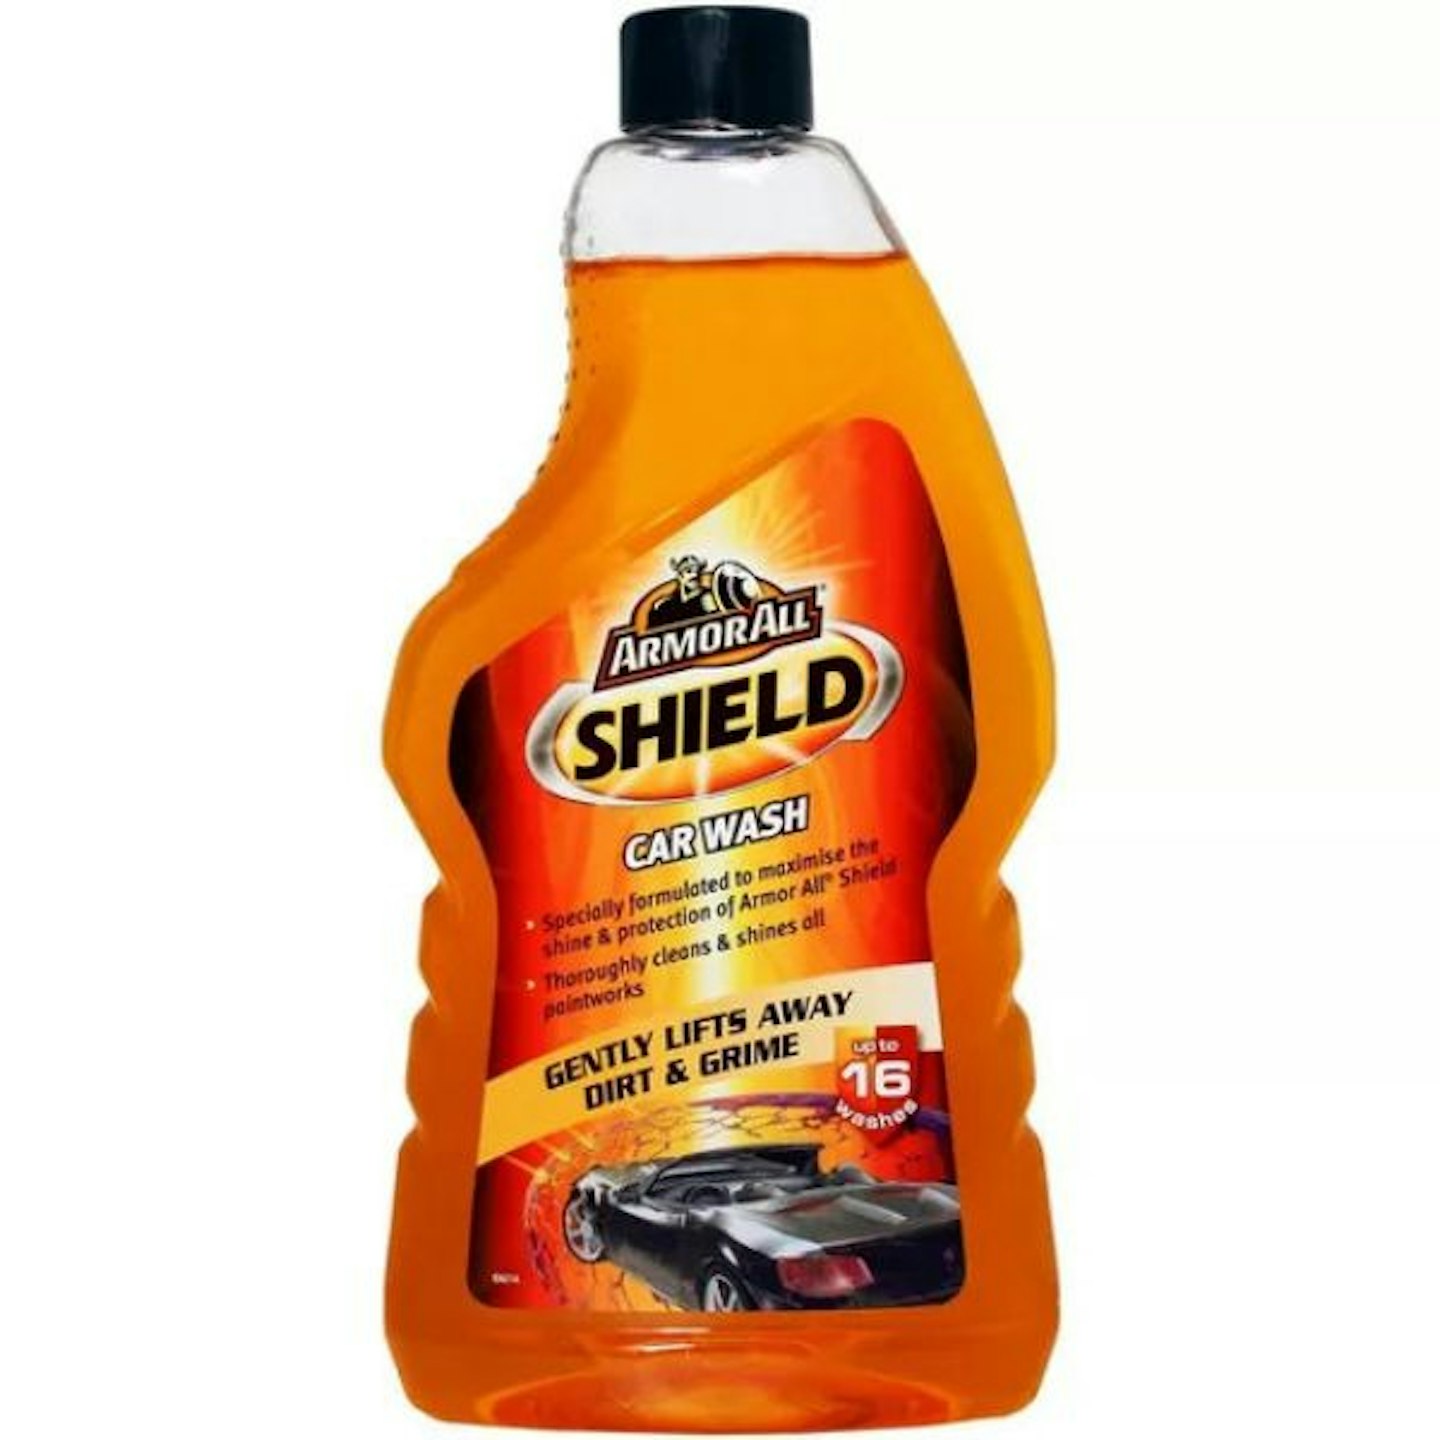 Armor All Shield Car Wash